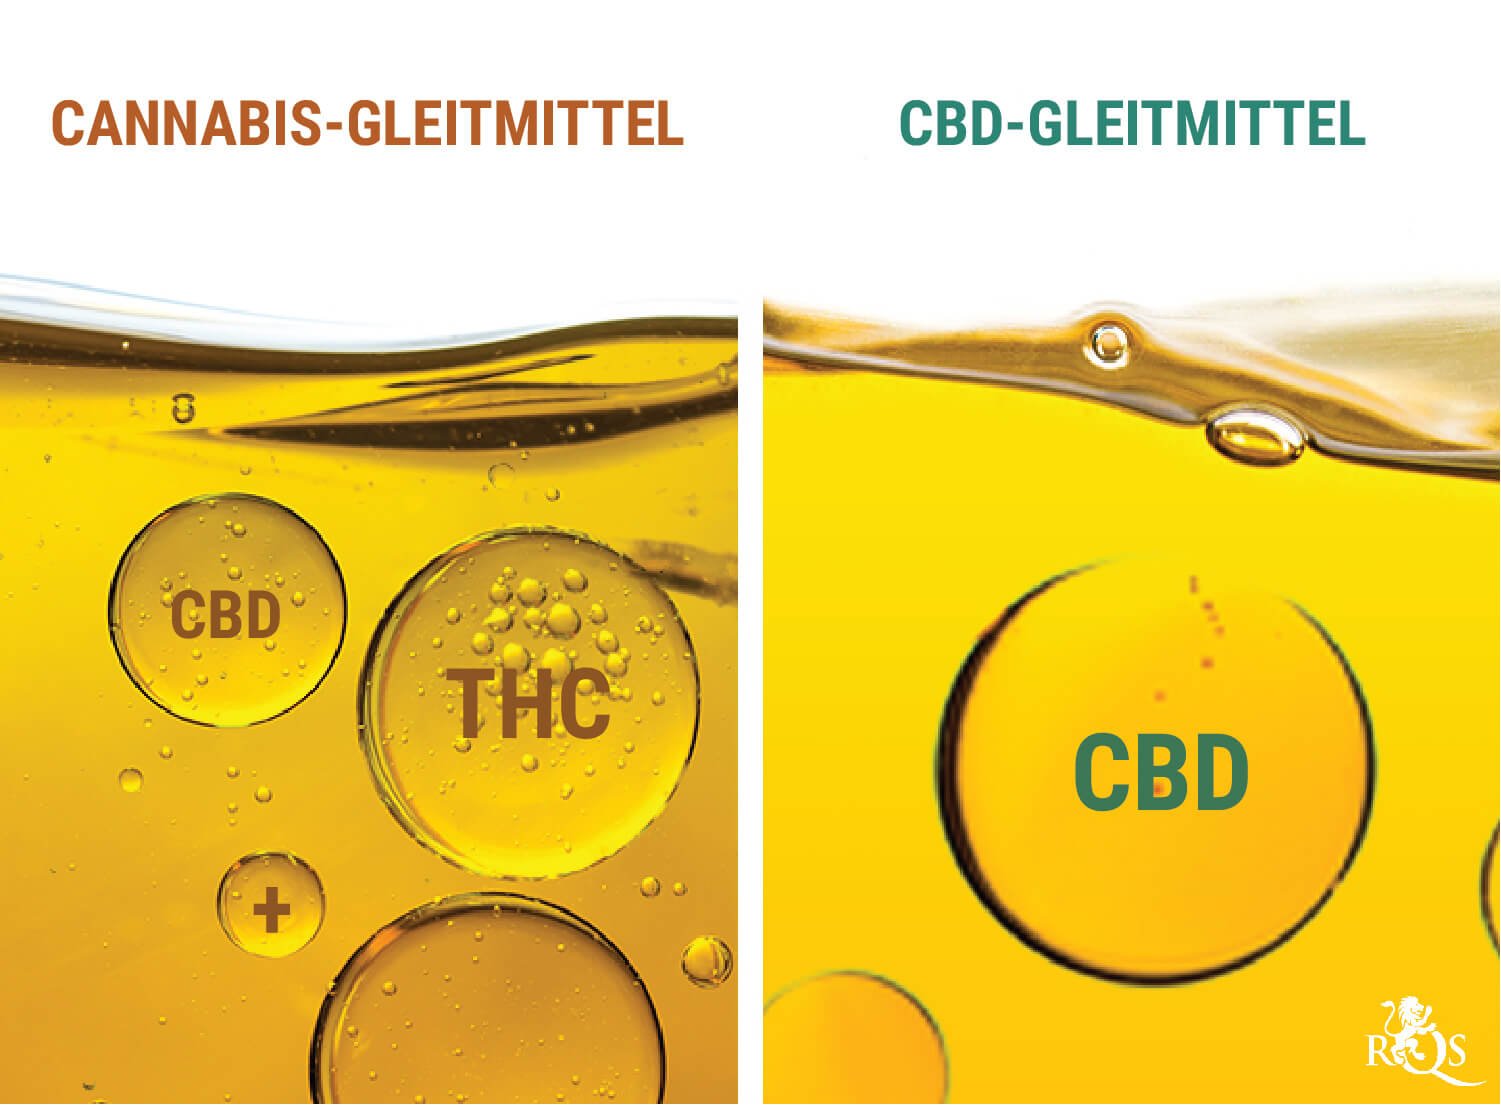 Cannabis-Gleitmittel vs. CBD-Gleitmittel